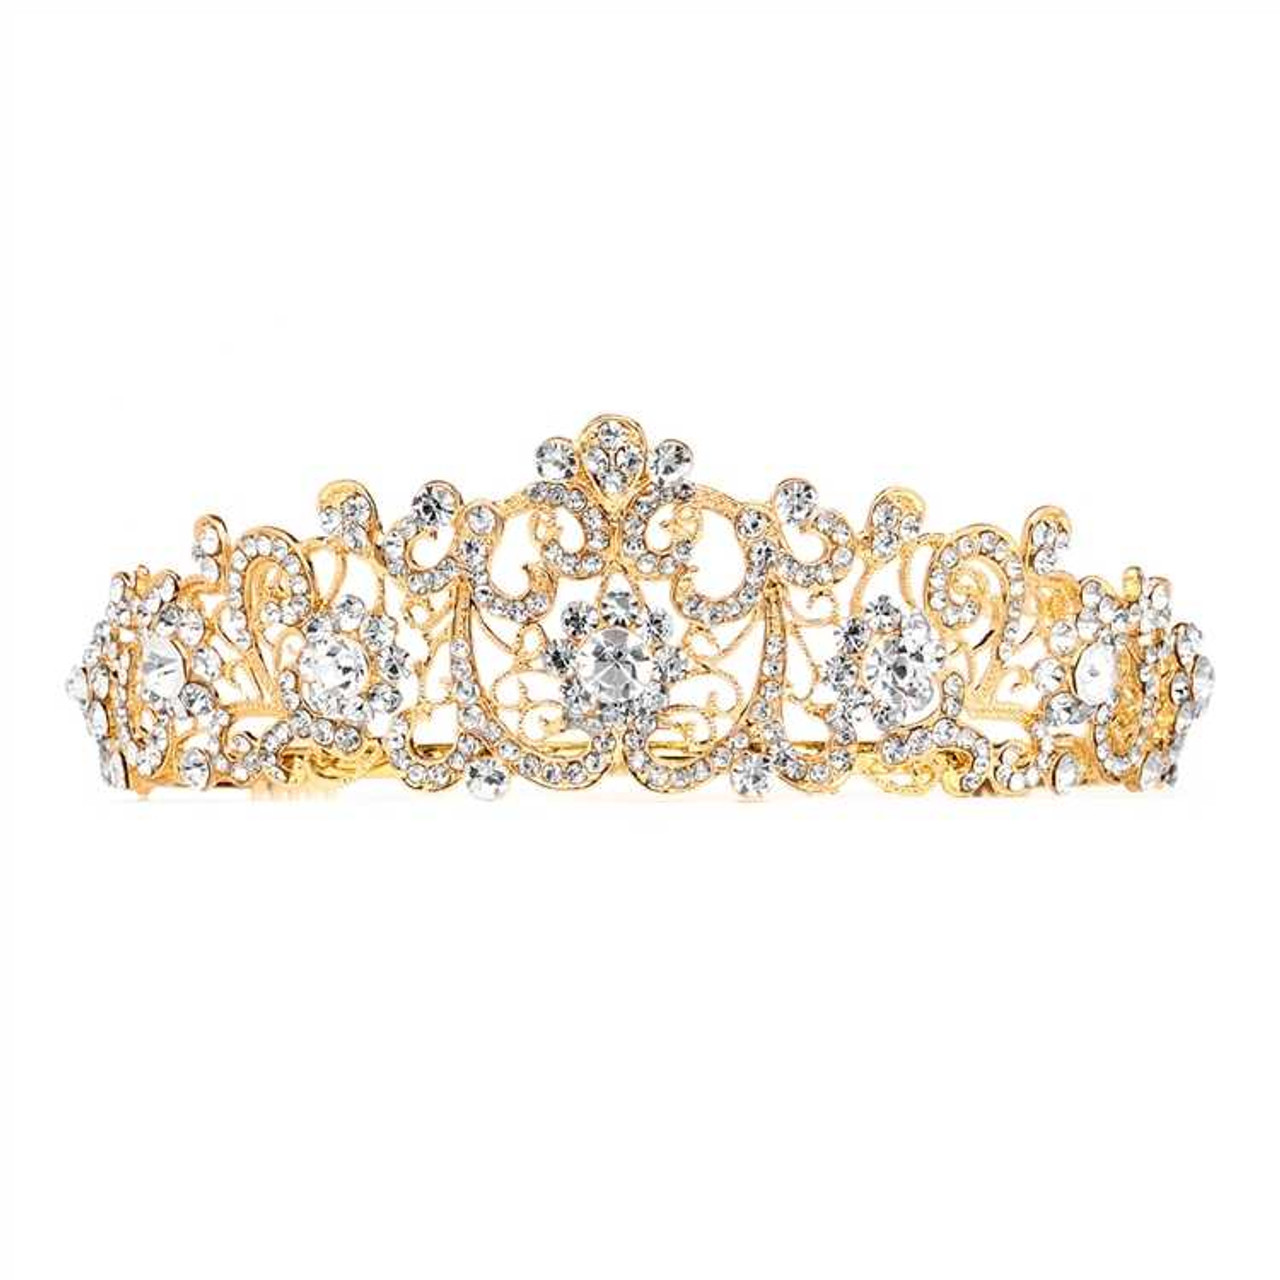 Gold Plated Crystal Vintage Look Wedding Tiara